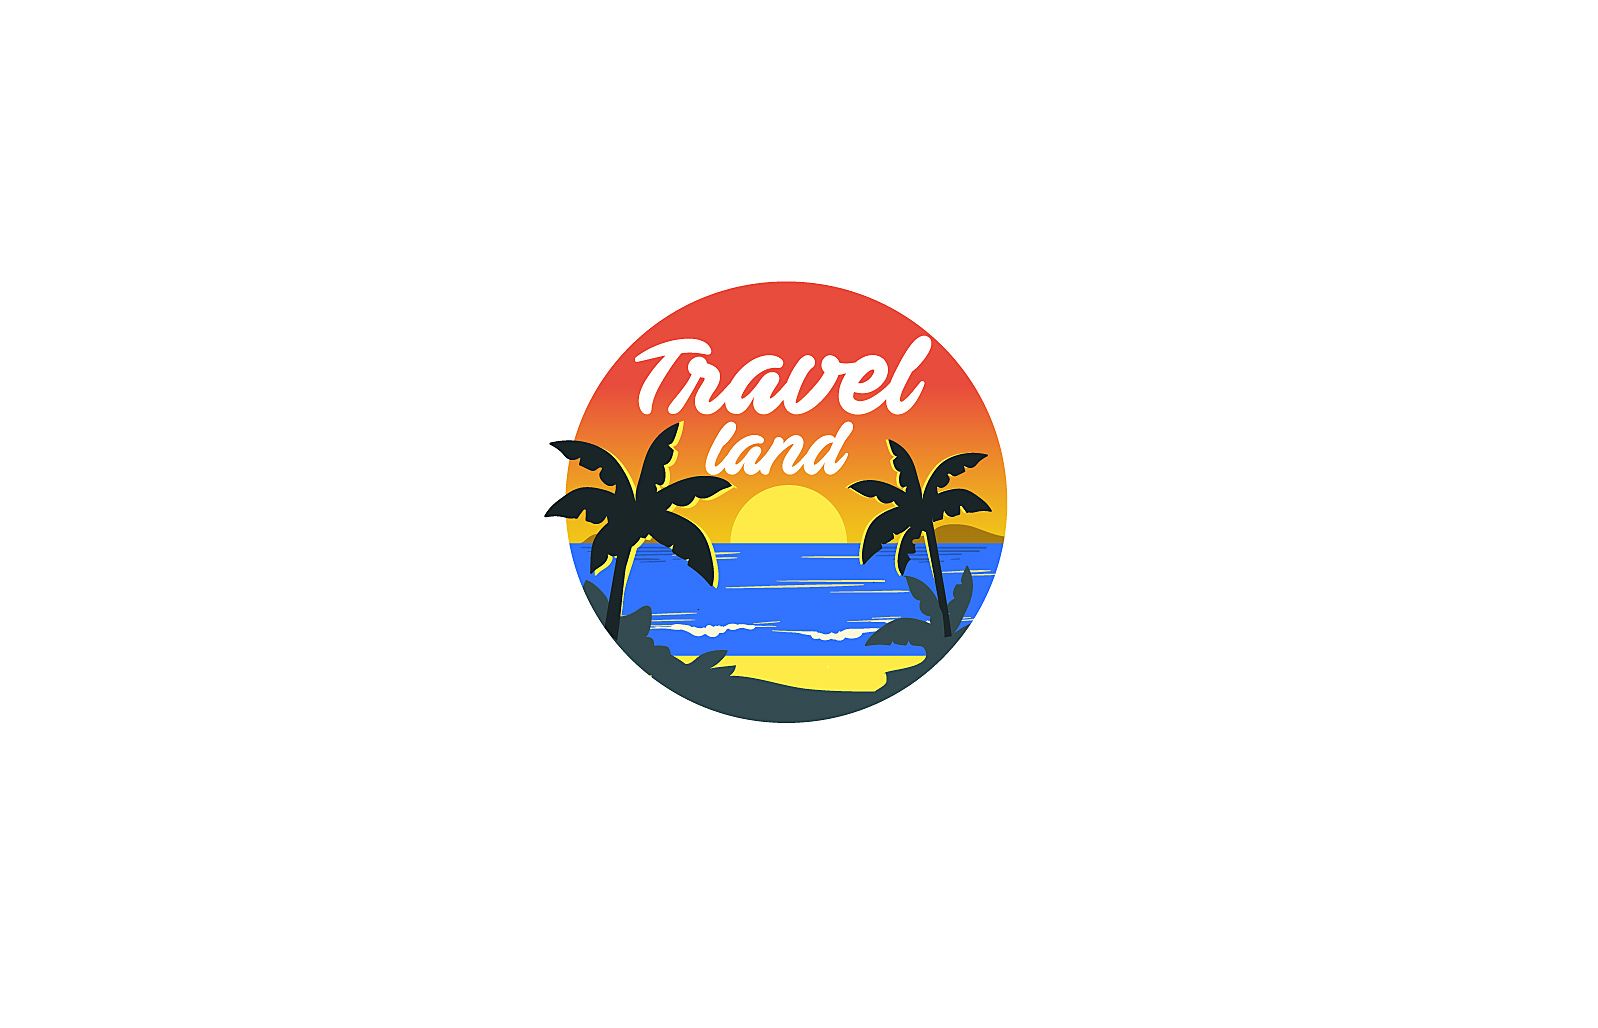 Лого и фирменный стиль для Турагентство Travel Market - дизайнер andblin61